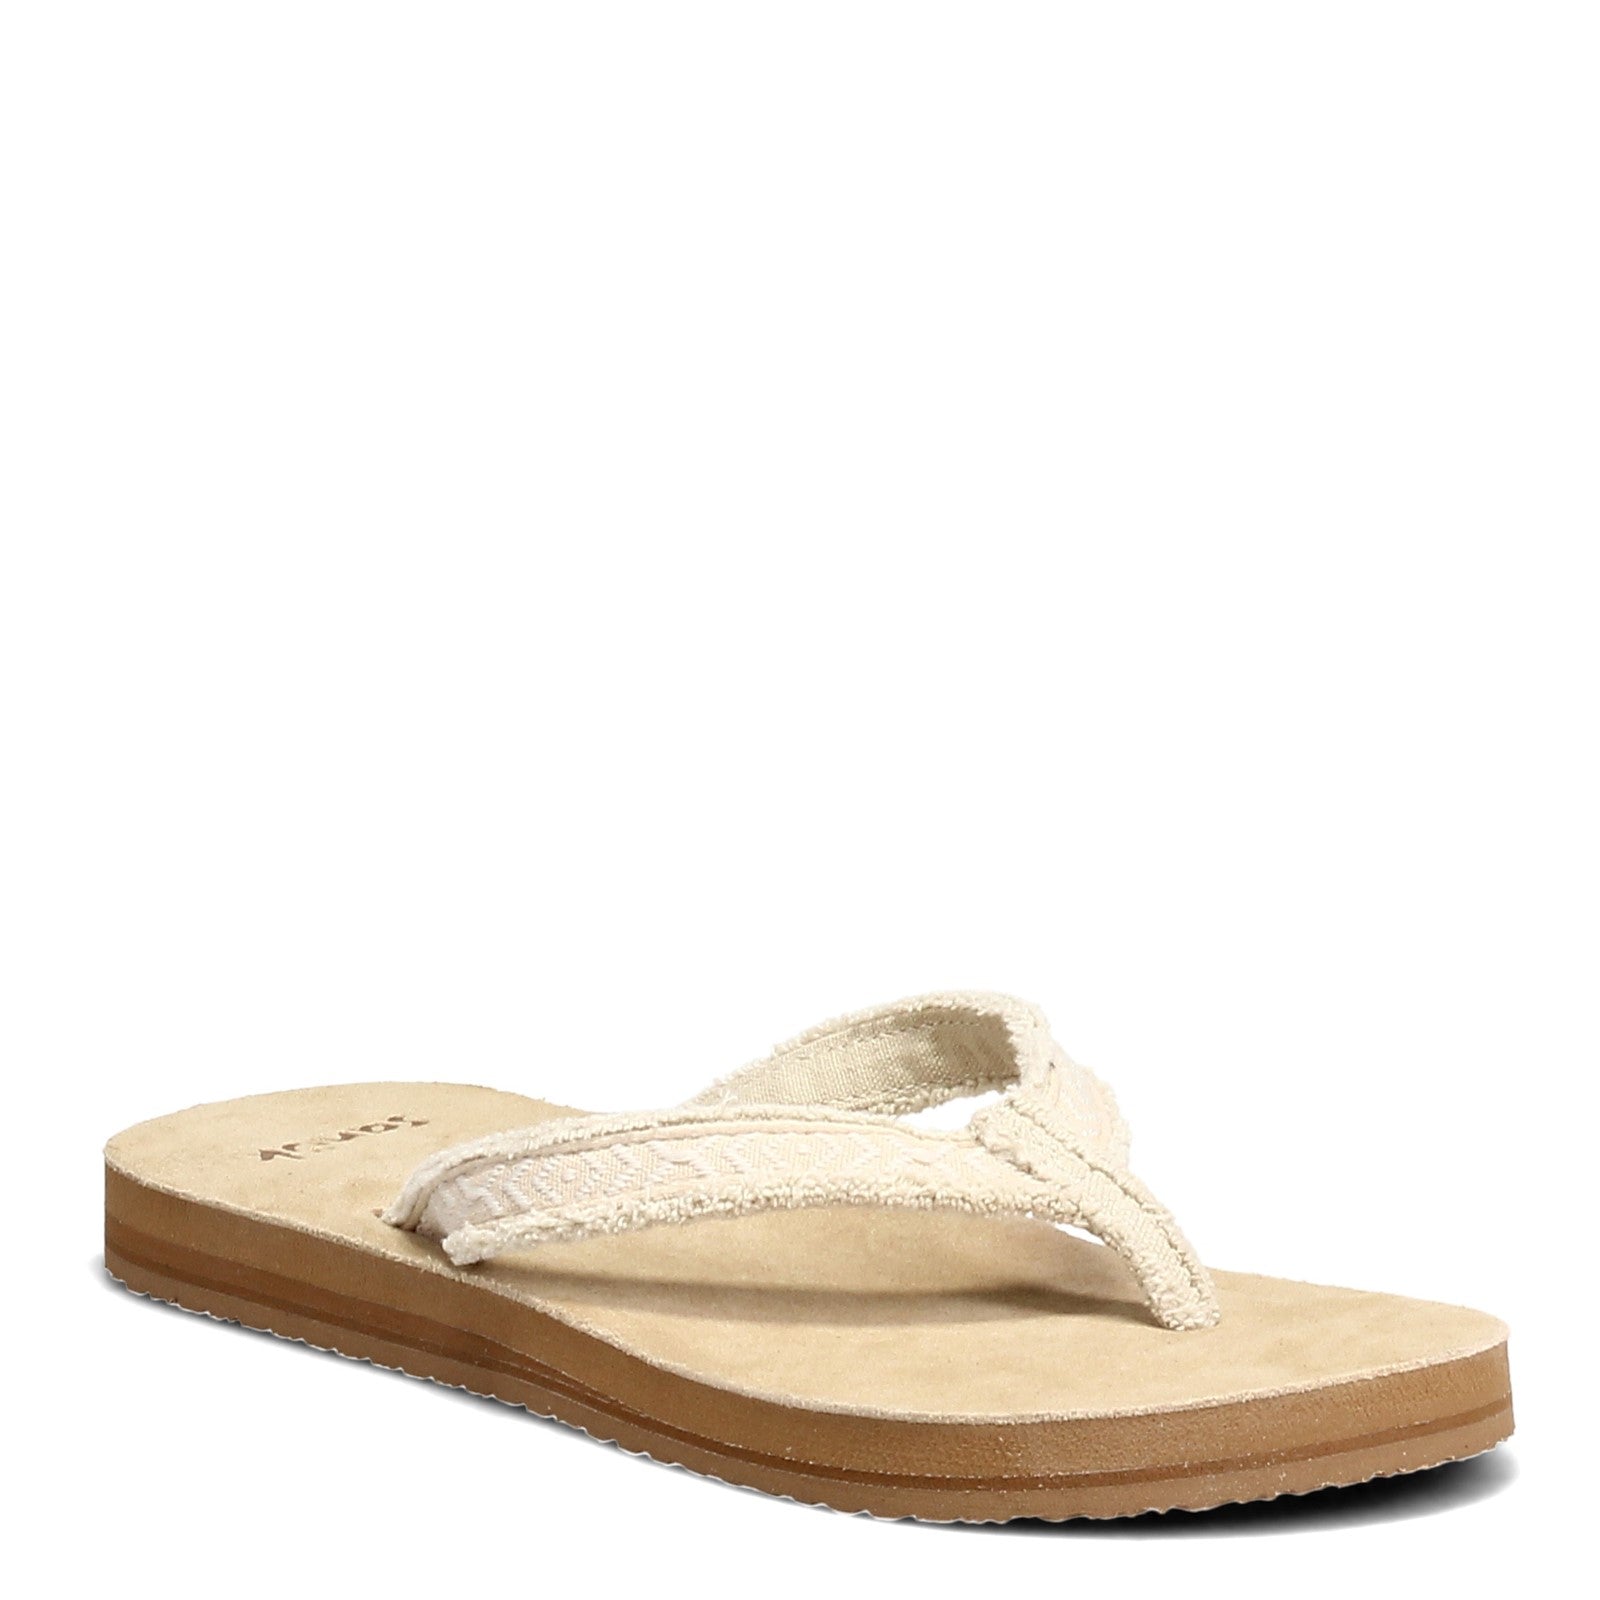 Sanuk Flip Flops Mens Brown Woven Textured Comfort Sandal Slipper Natural  Yogi 3